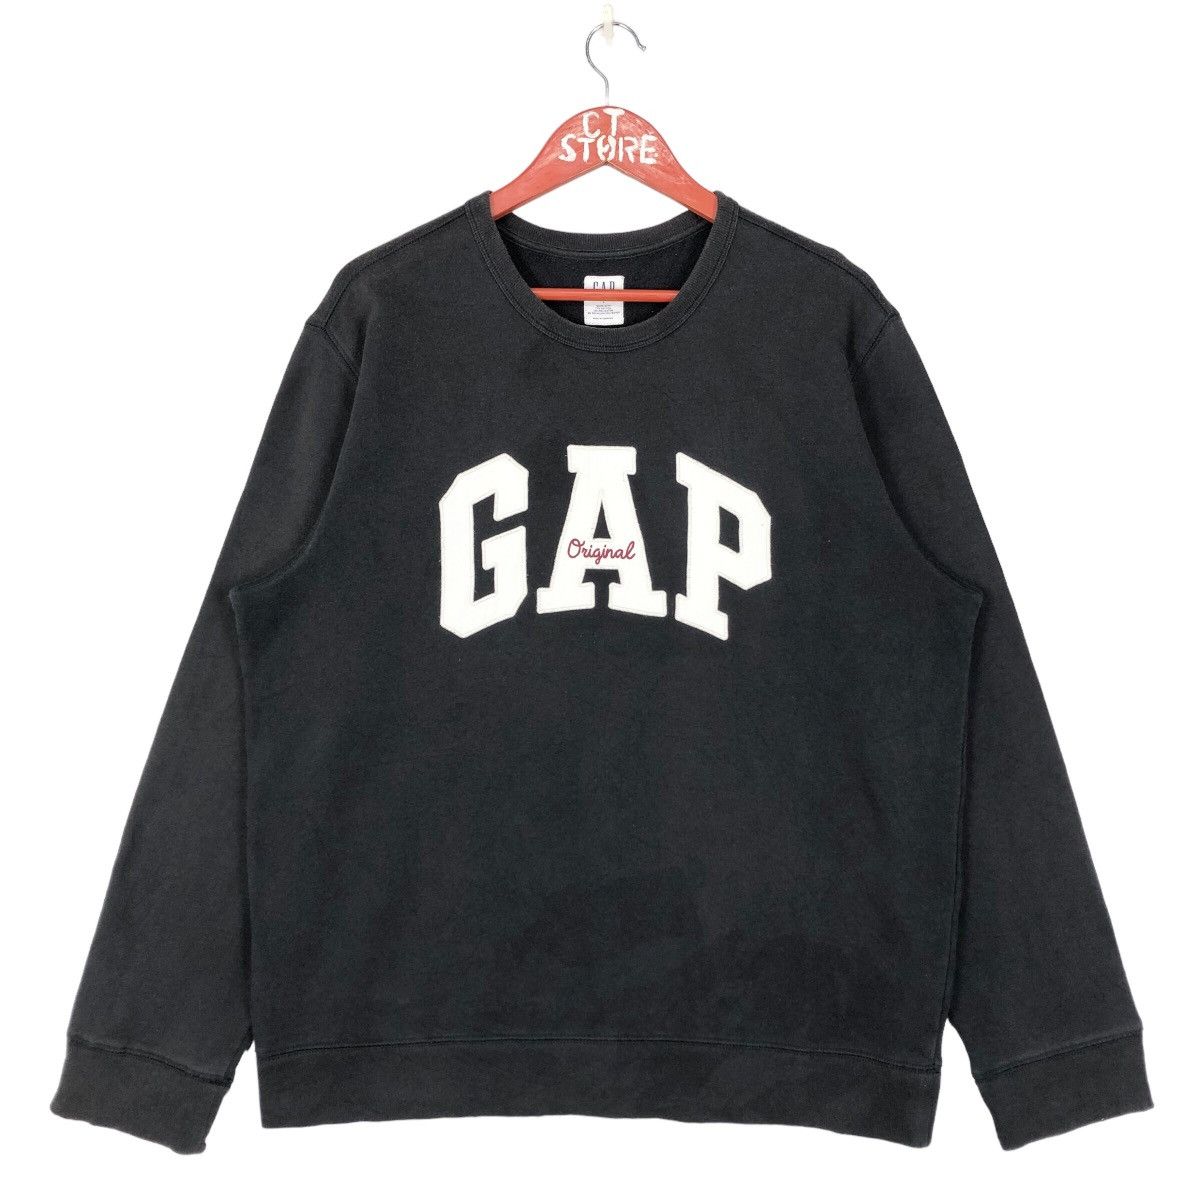 Vintage - Gap Big Logo Crewneck Sweatshirts - 1